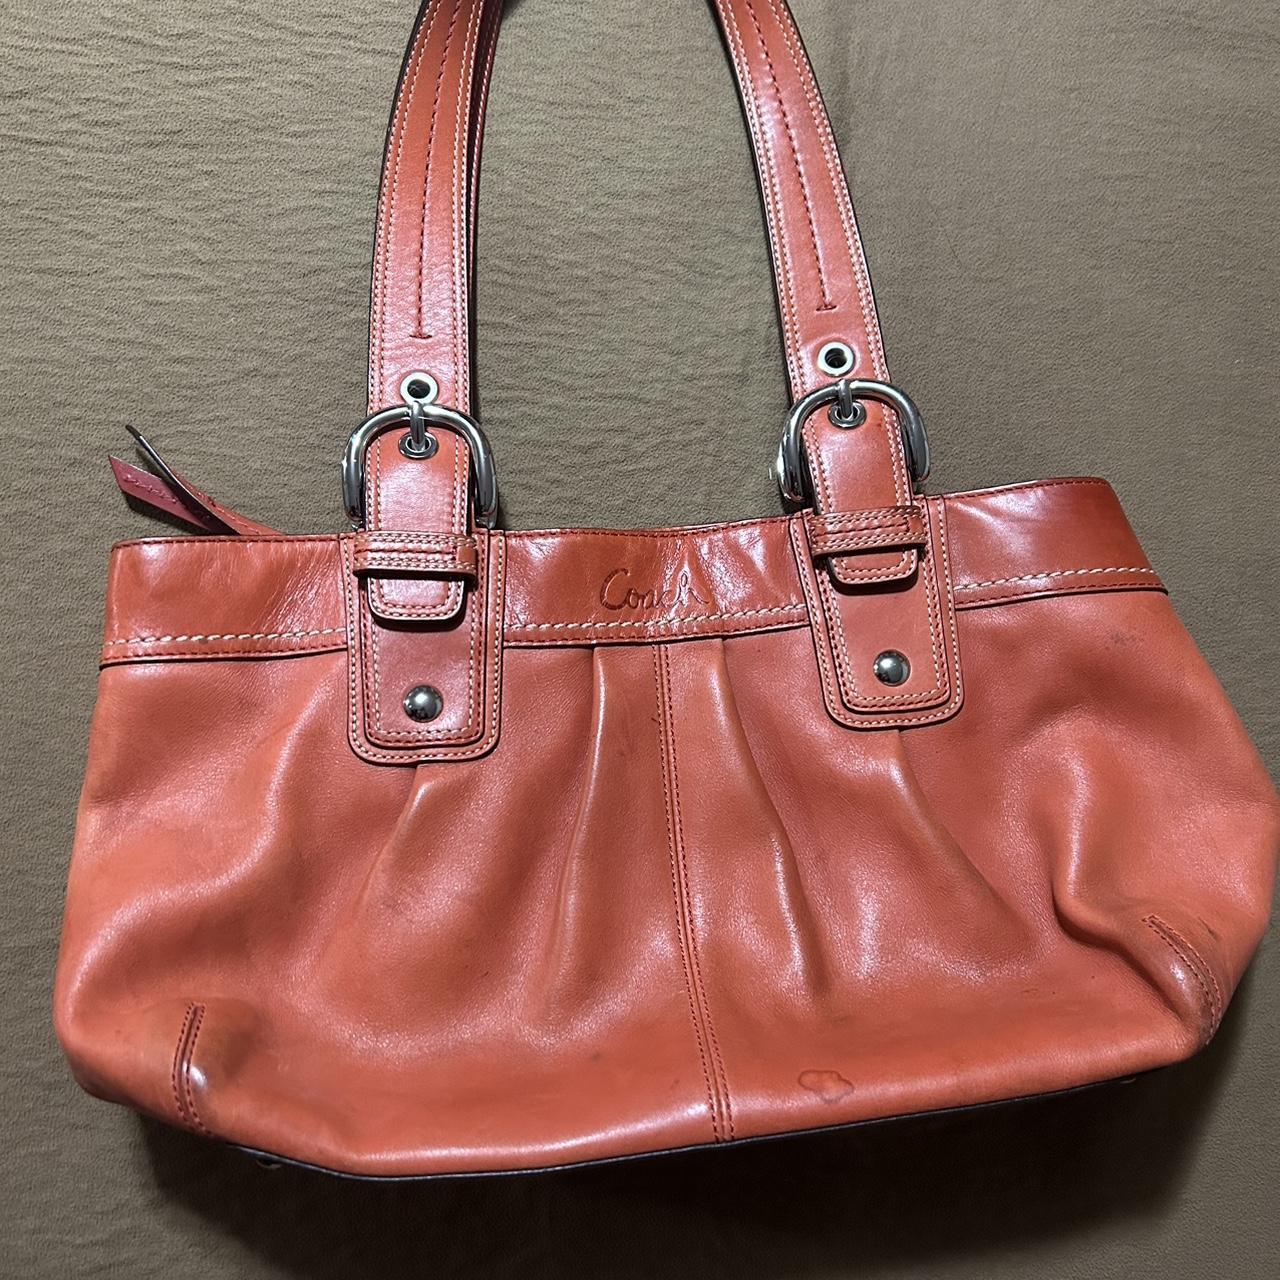 First Coach Bag! : r/handbags